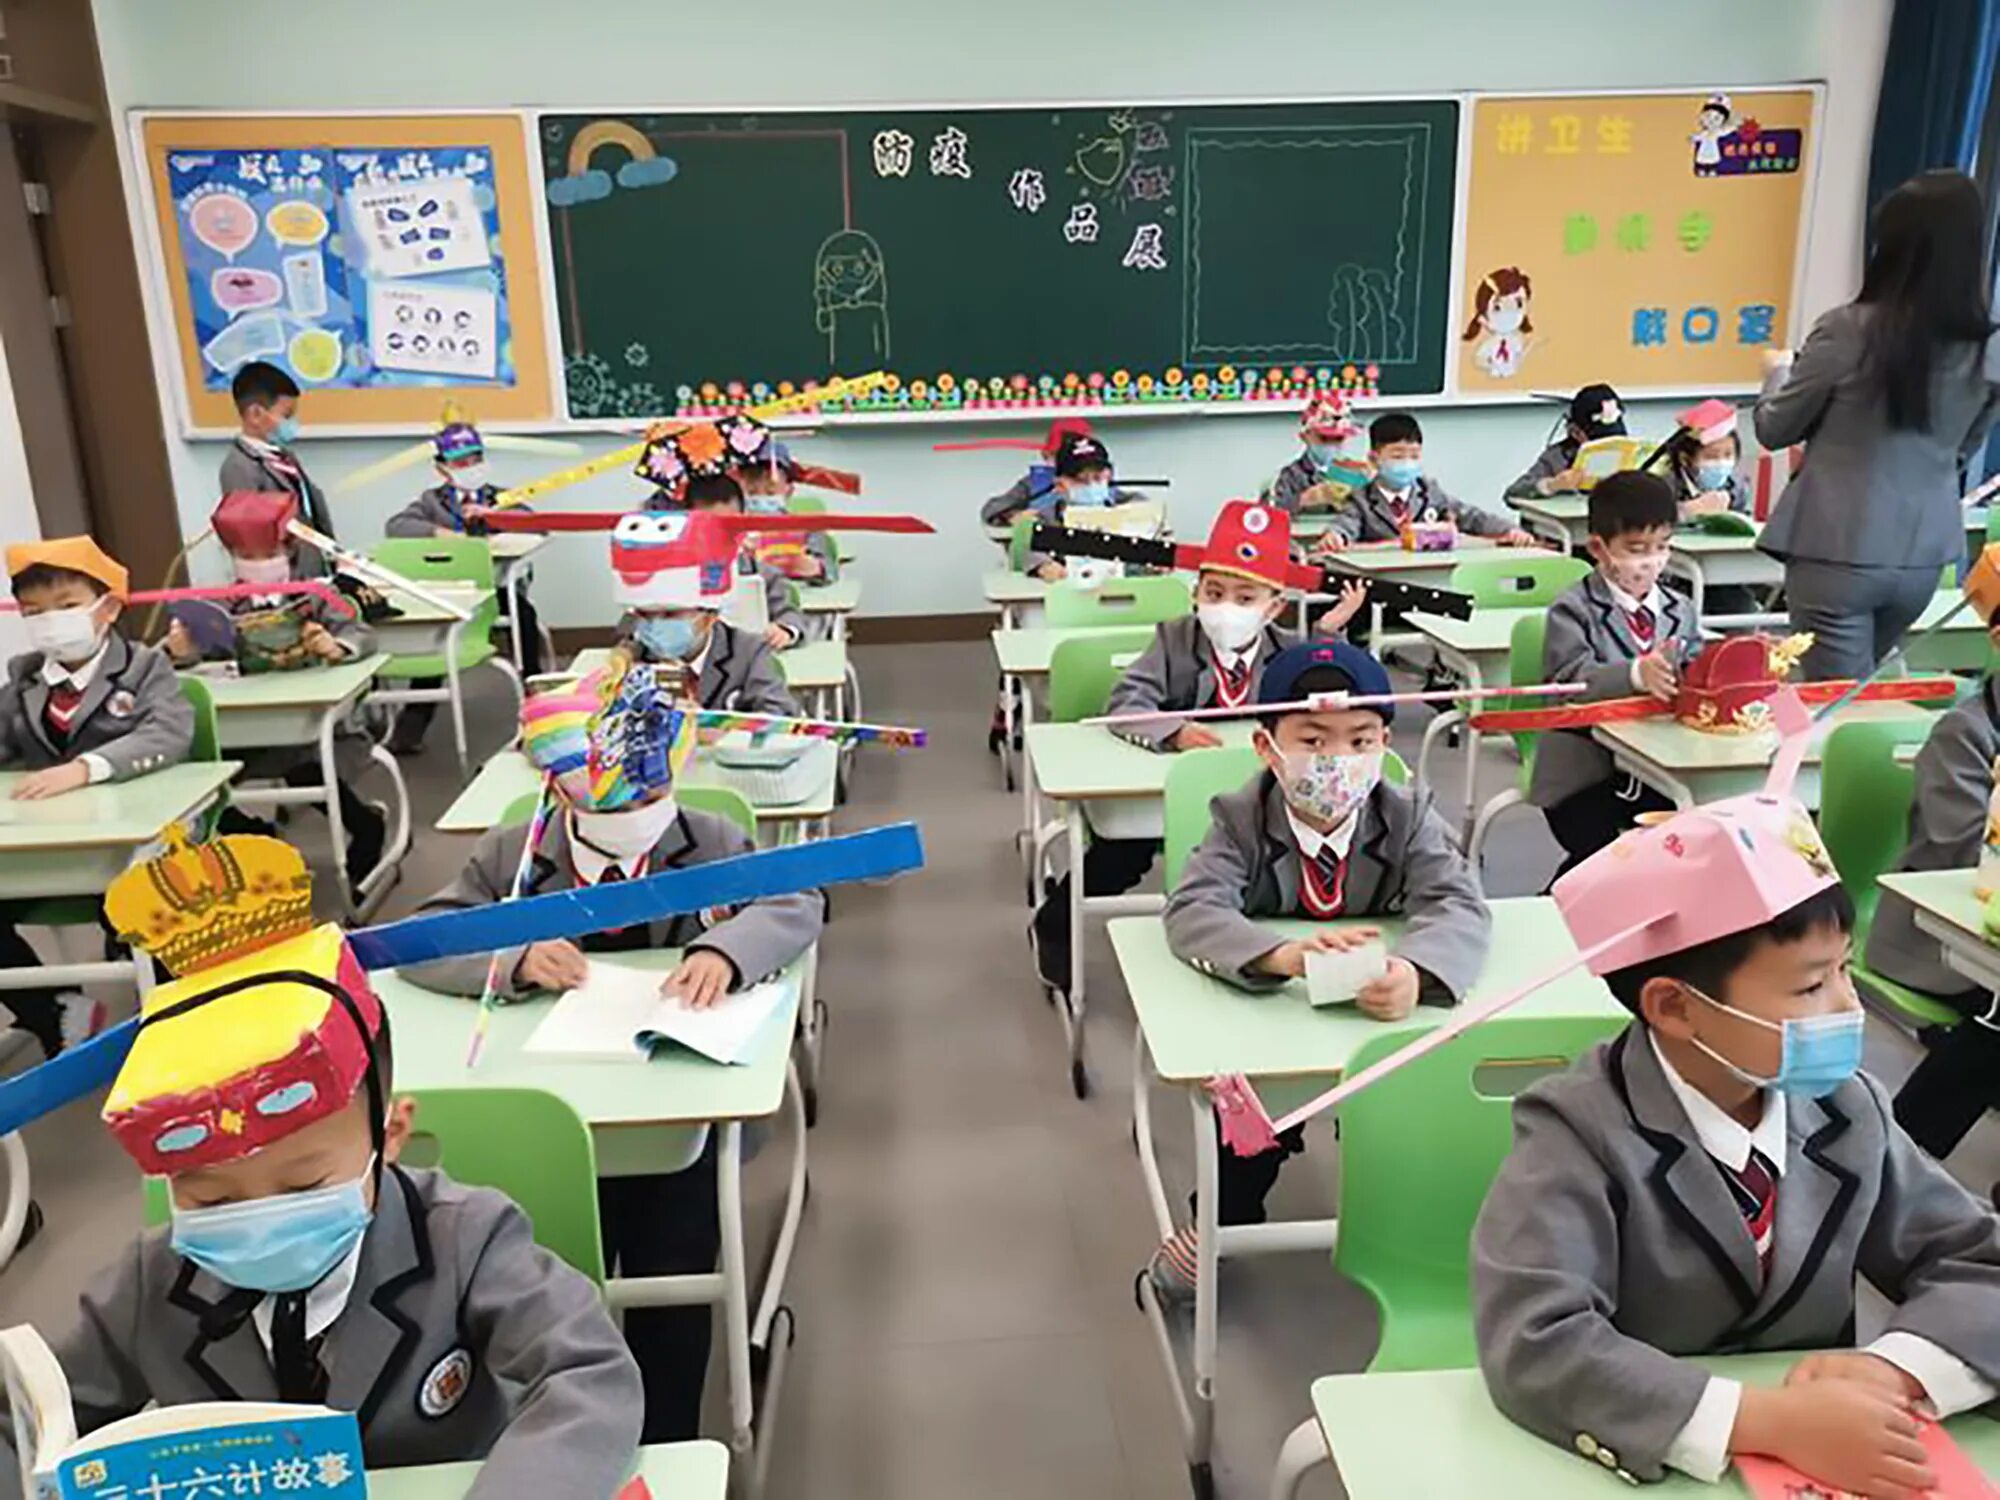 В школе китайский изучает 60 учащихся. Китайские школьники. Китайские дети в школе. Урок в китайской школе. Начальная школа в Китае.